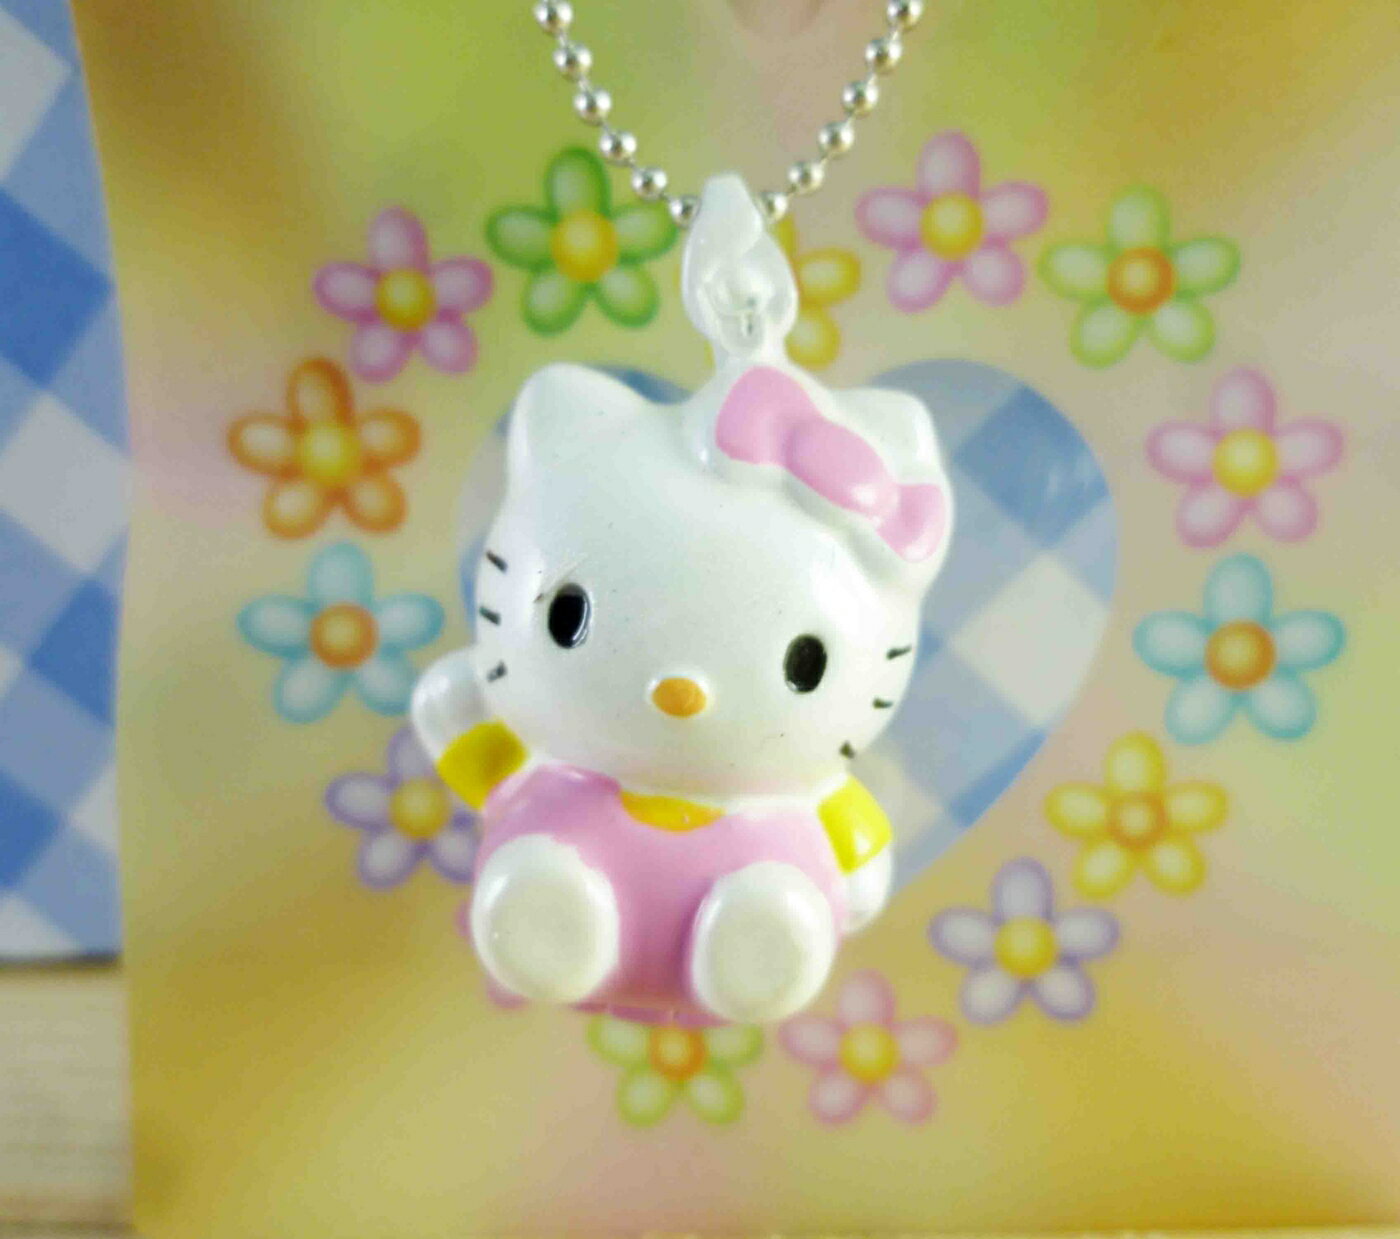 【震撼精品百貨】Hello Kitty 凱蒂貓 KITTY鑰匙圈-香精 震撼日式精品百貨